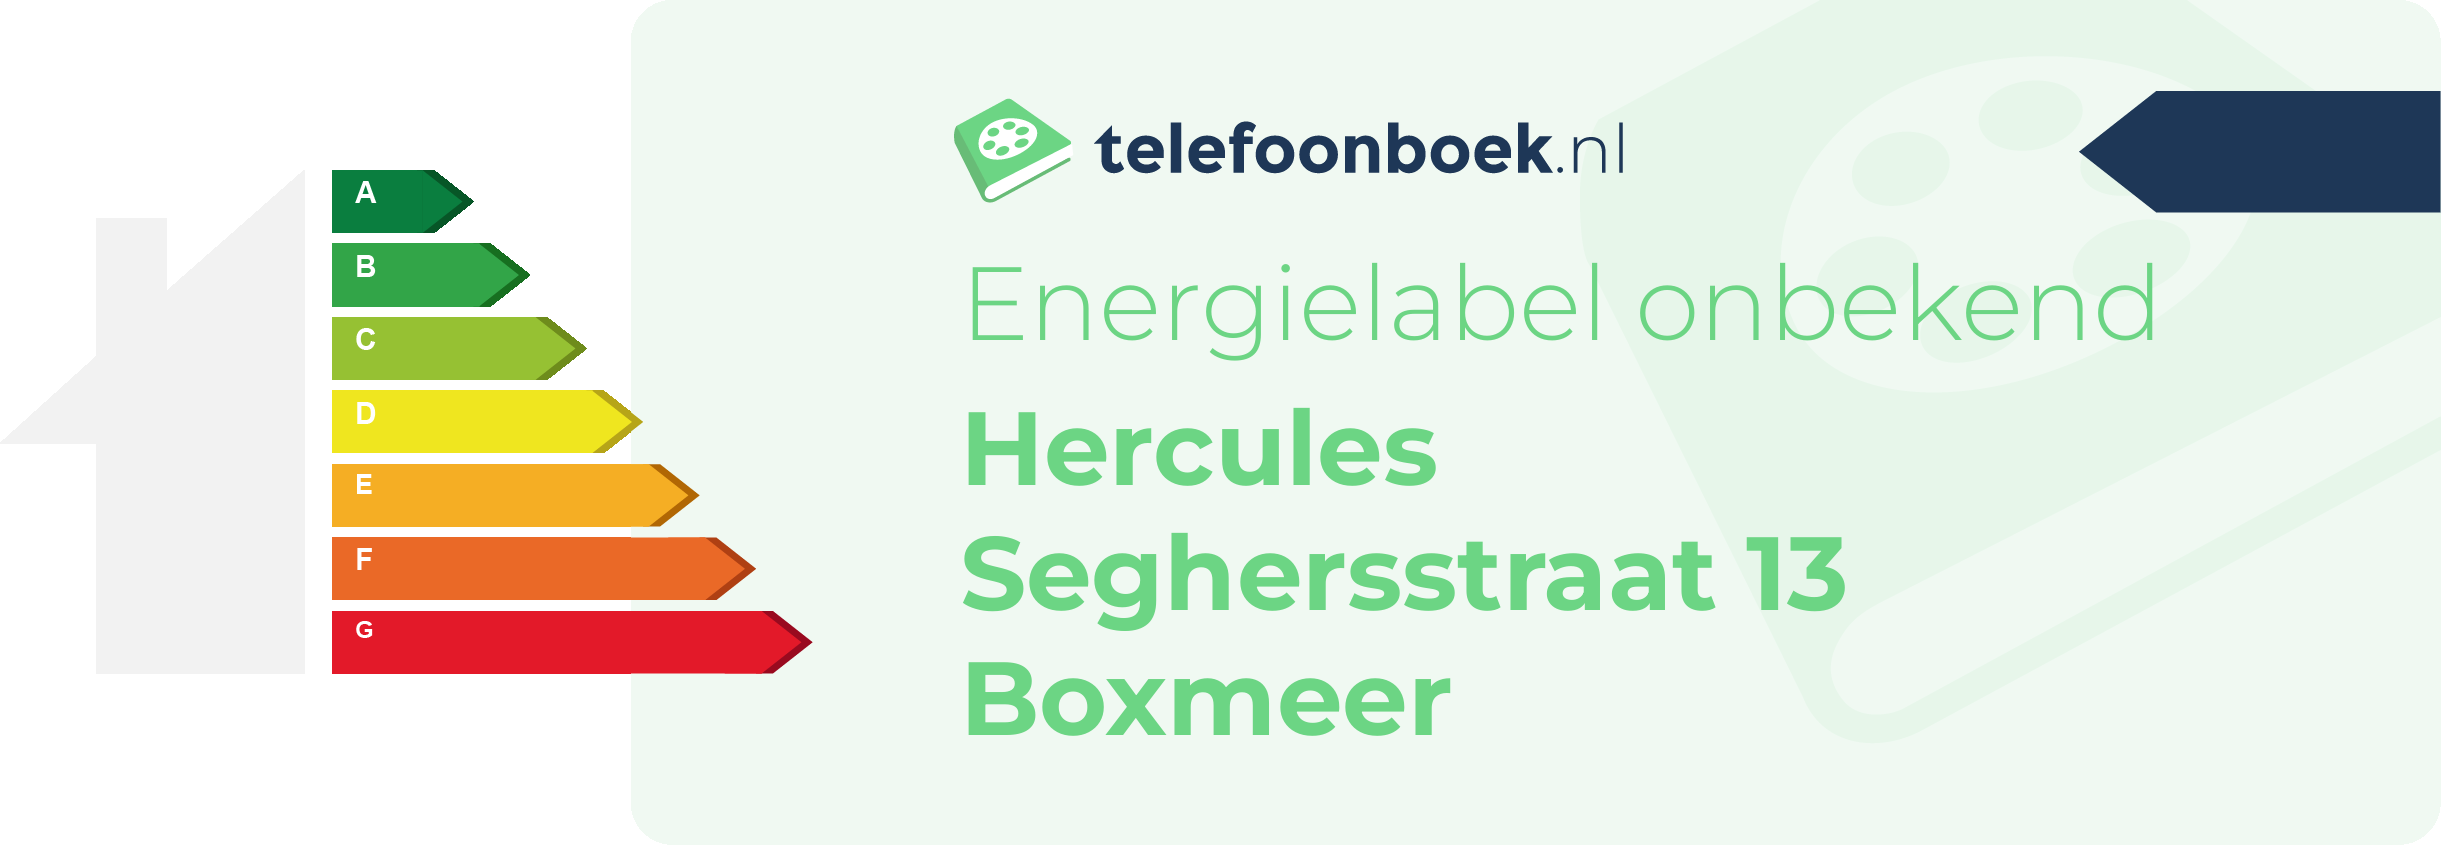 Energielabel Hercules Seghersstraat 13 Boxmeer